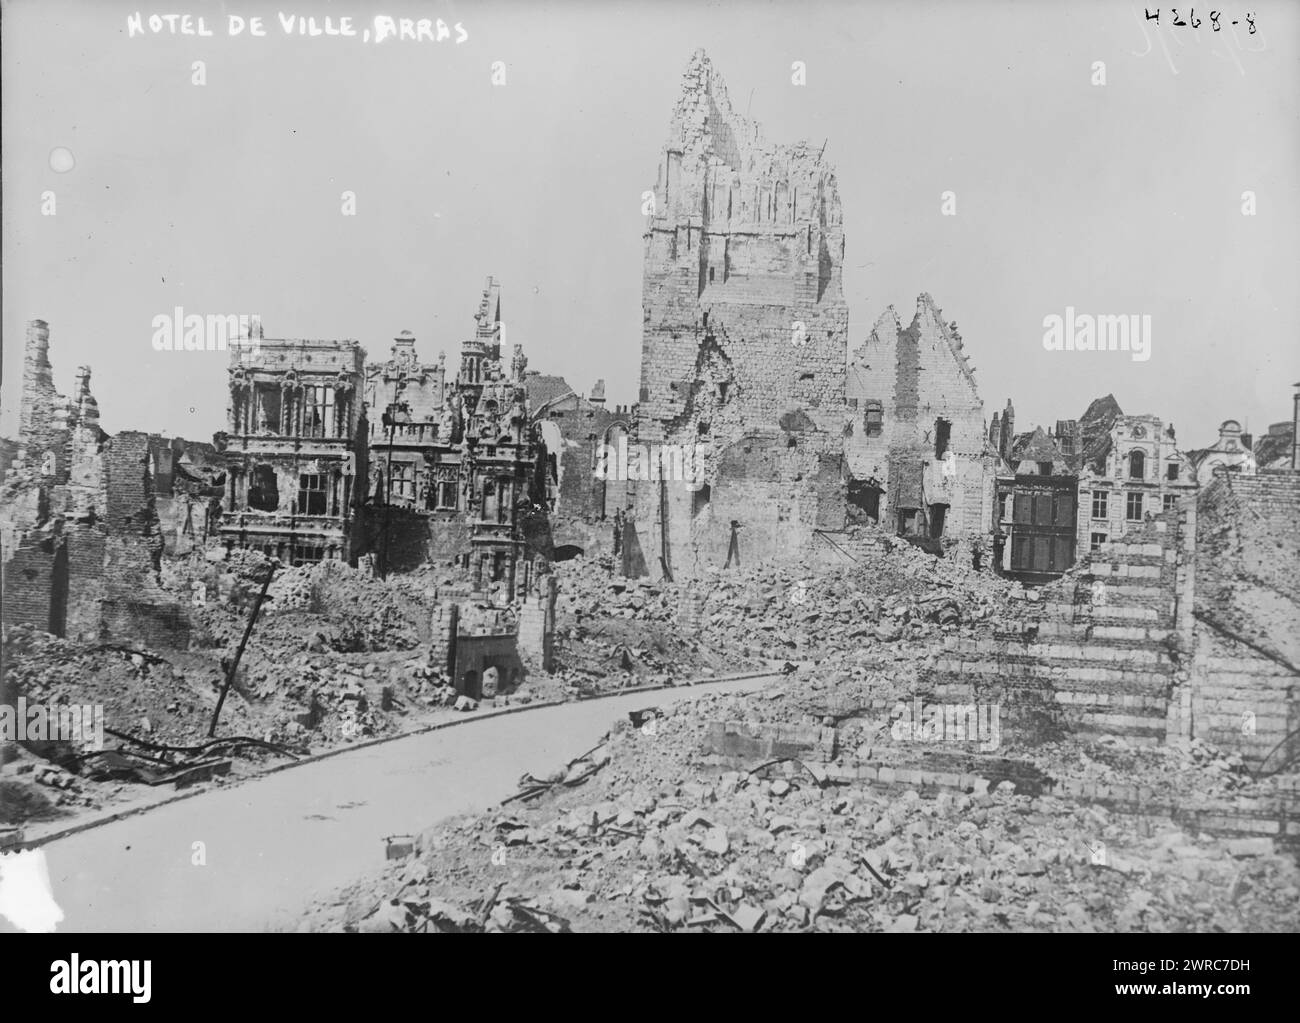 Hotel de ville, Arras, photographie montre les ruines de l'Hôtel de ville, Arras, France le 26 mai 1917 pendant la première Guerre mondiale, 1917 mai 26, Guerre mondiale, 1914-1918, négatifs en verre, 1 négatif : verre Banque D'Images